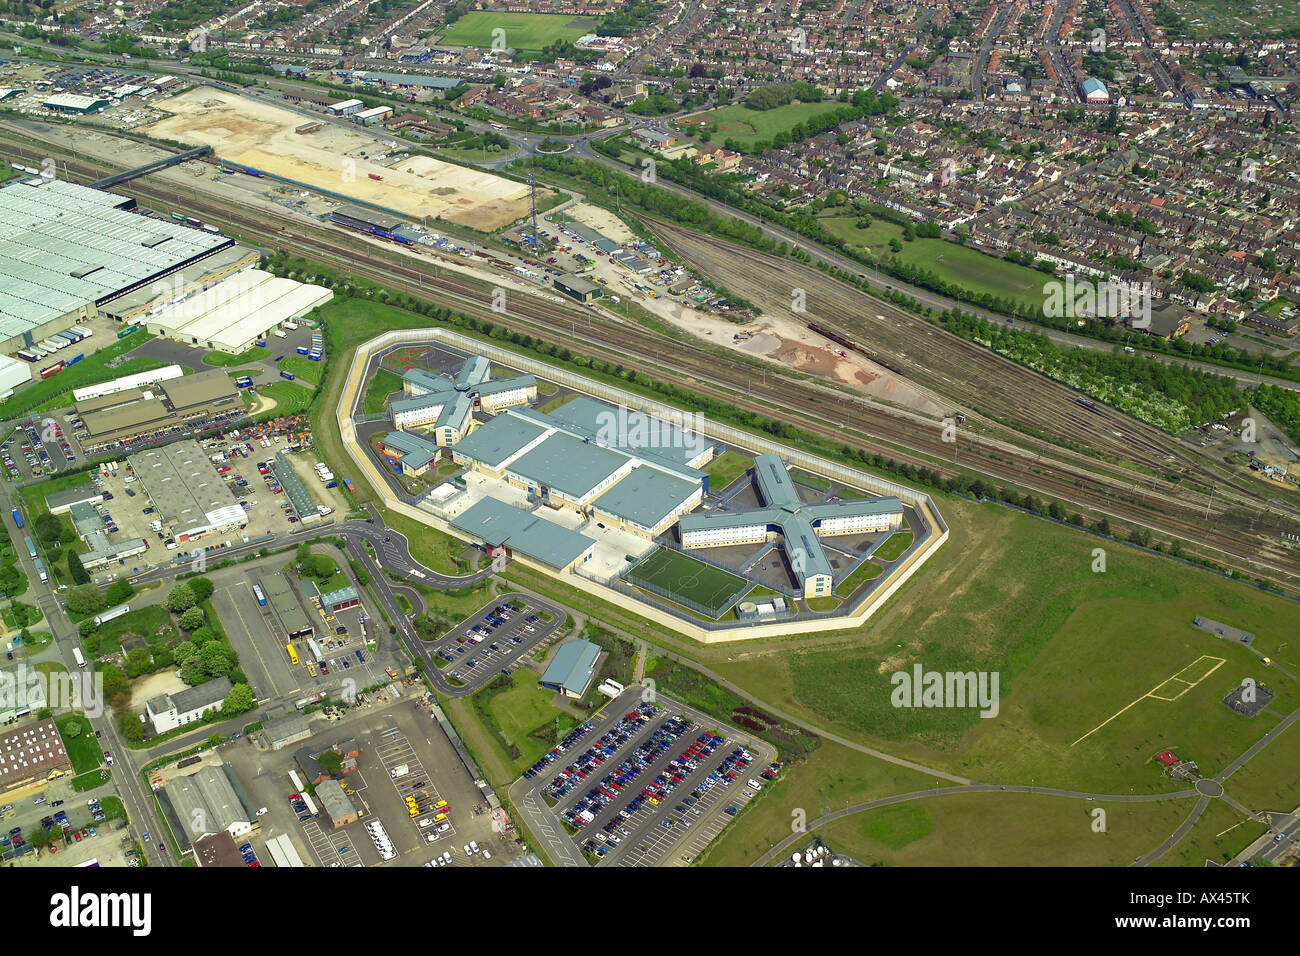 Vista aérea de la prisión de Peterborough mostrando su cercanía a los polígonos industriales y de vivienda local, también conocido como HMP Peterborough Foto de stock